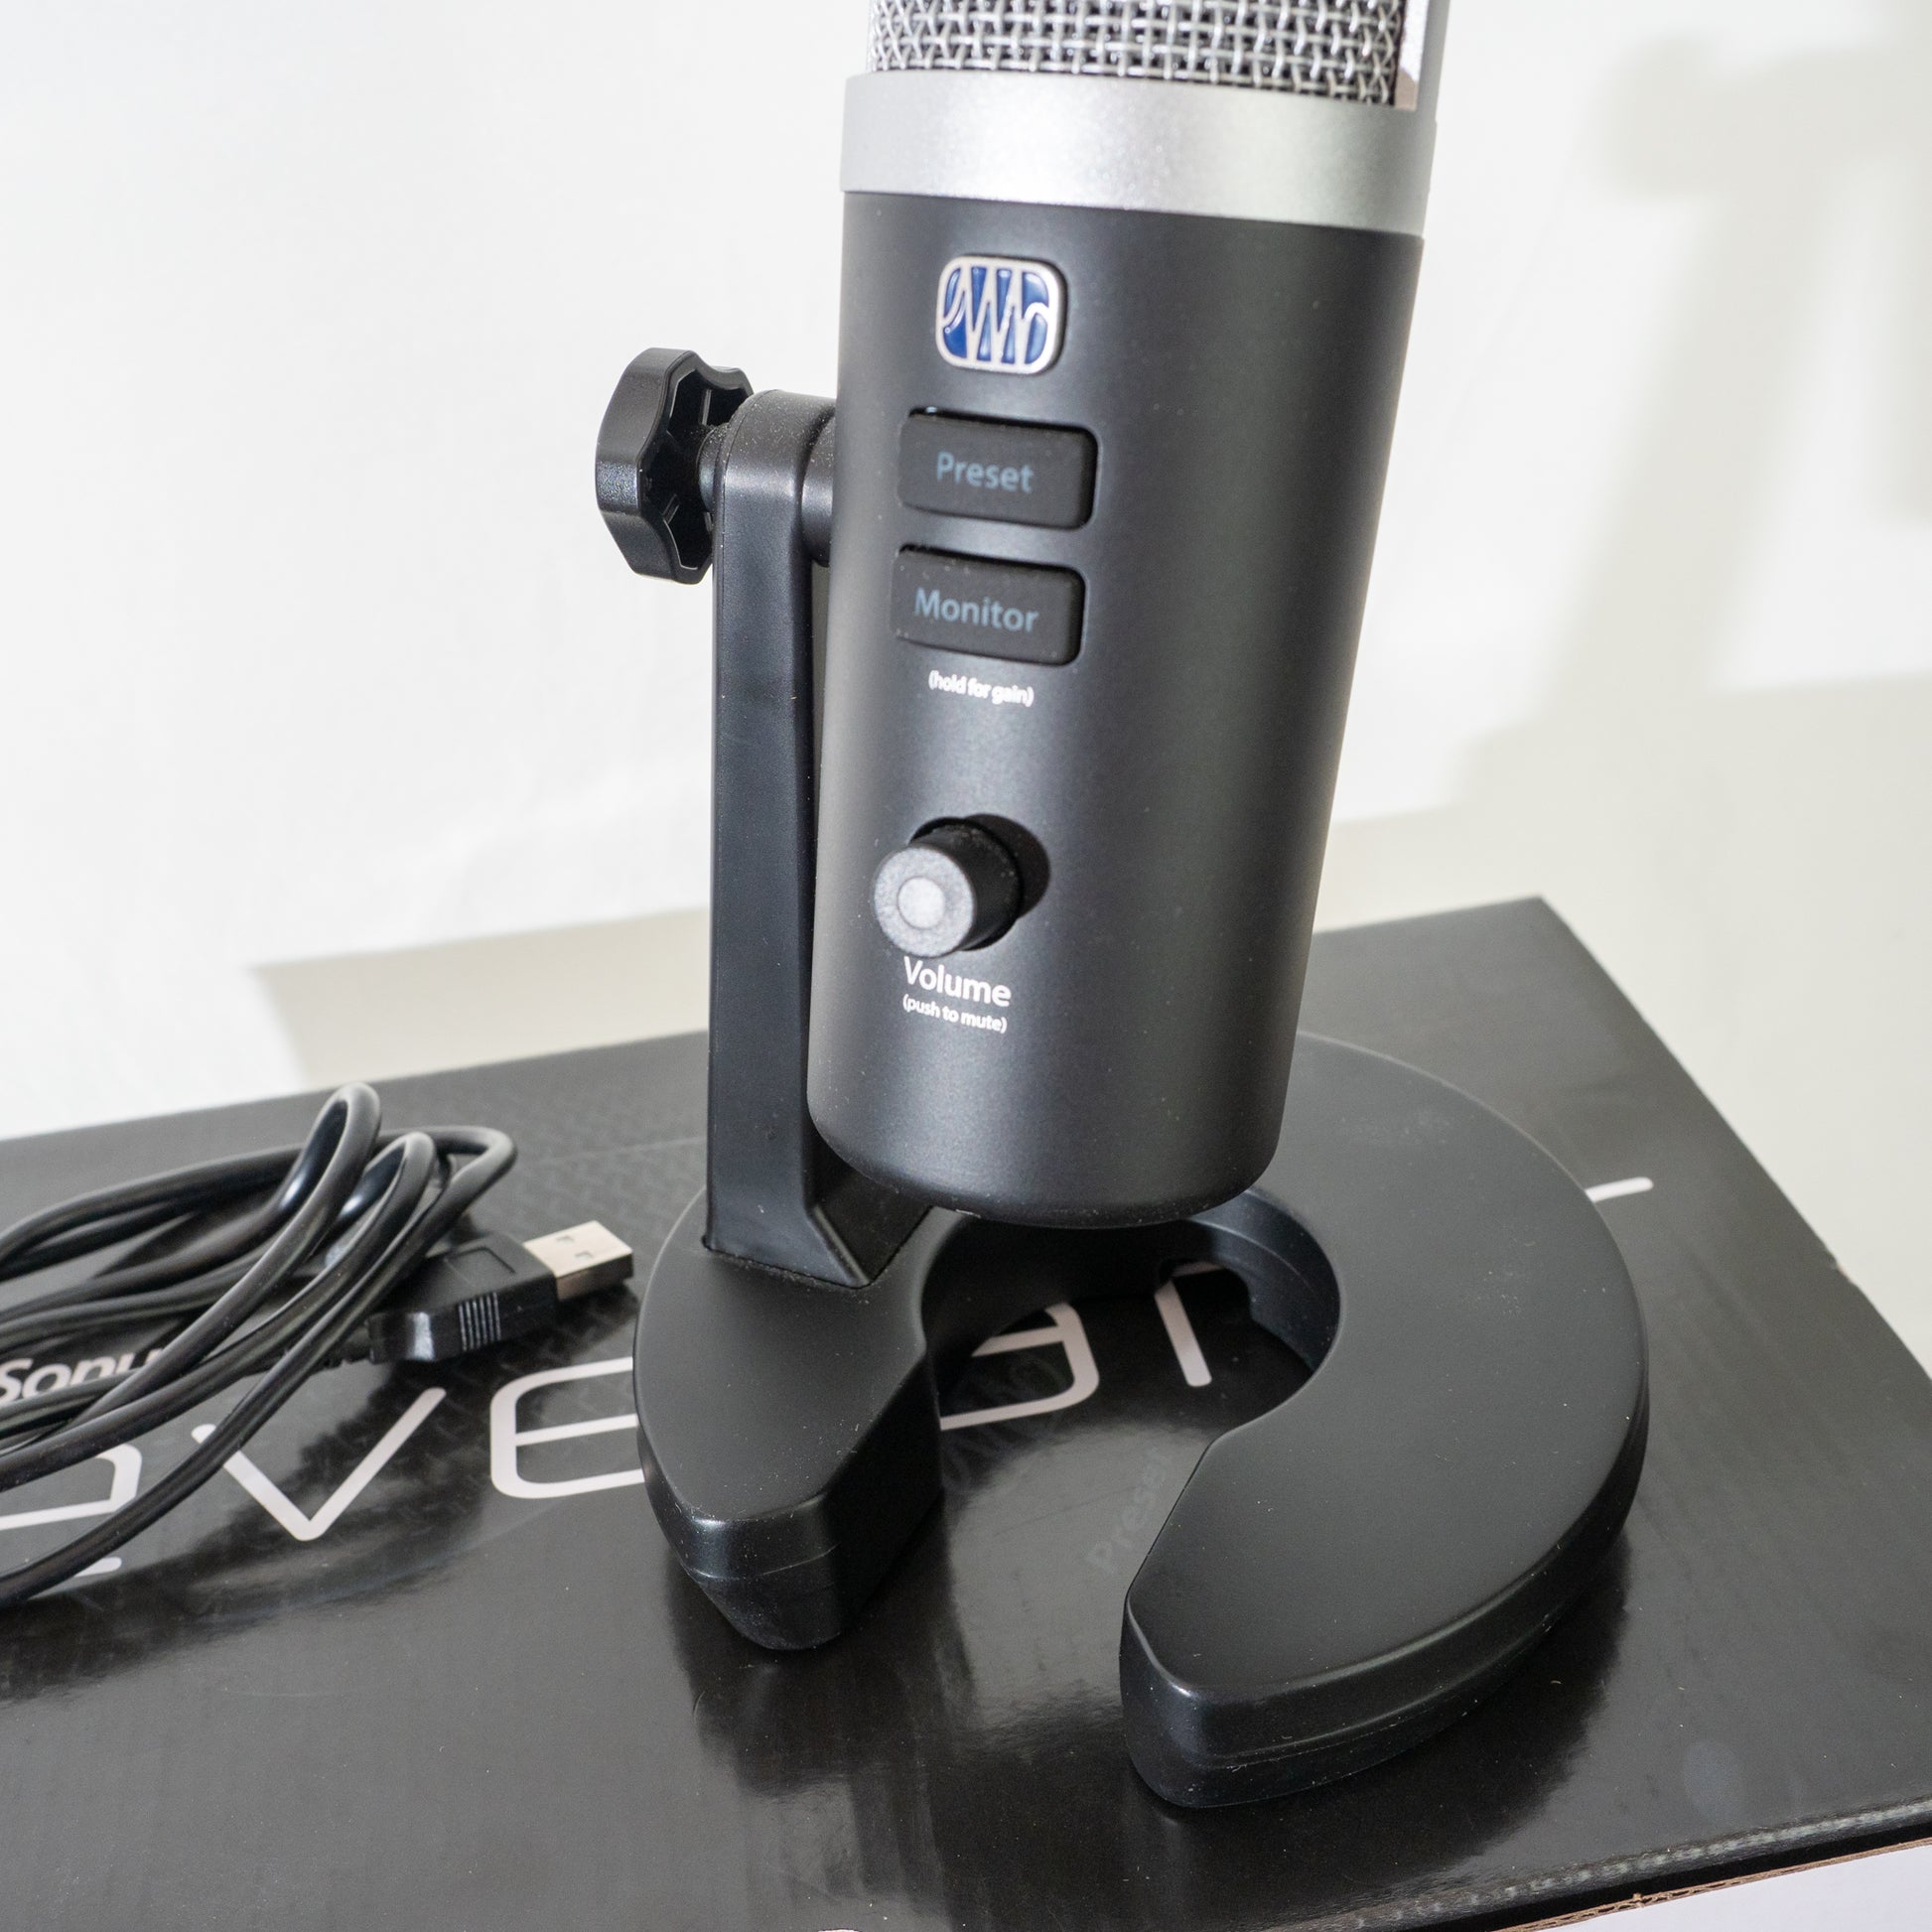 PreSonus Revelator, USB Microphone